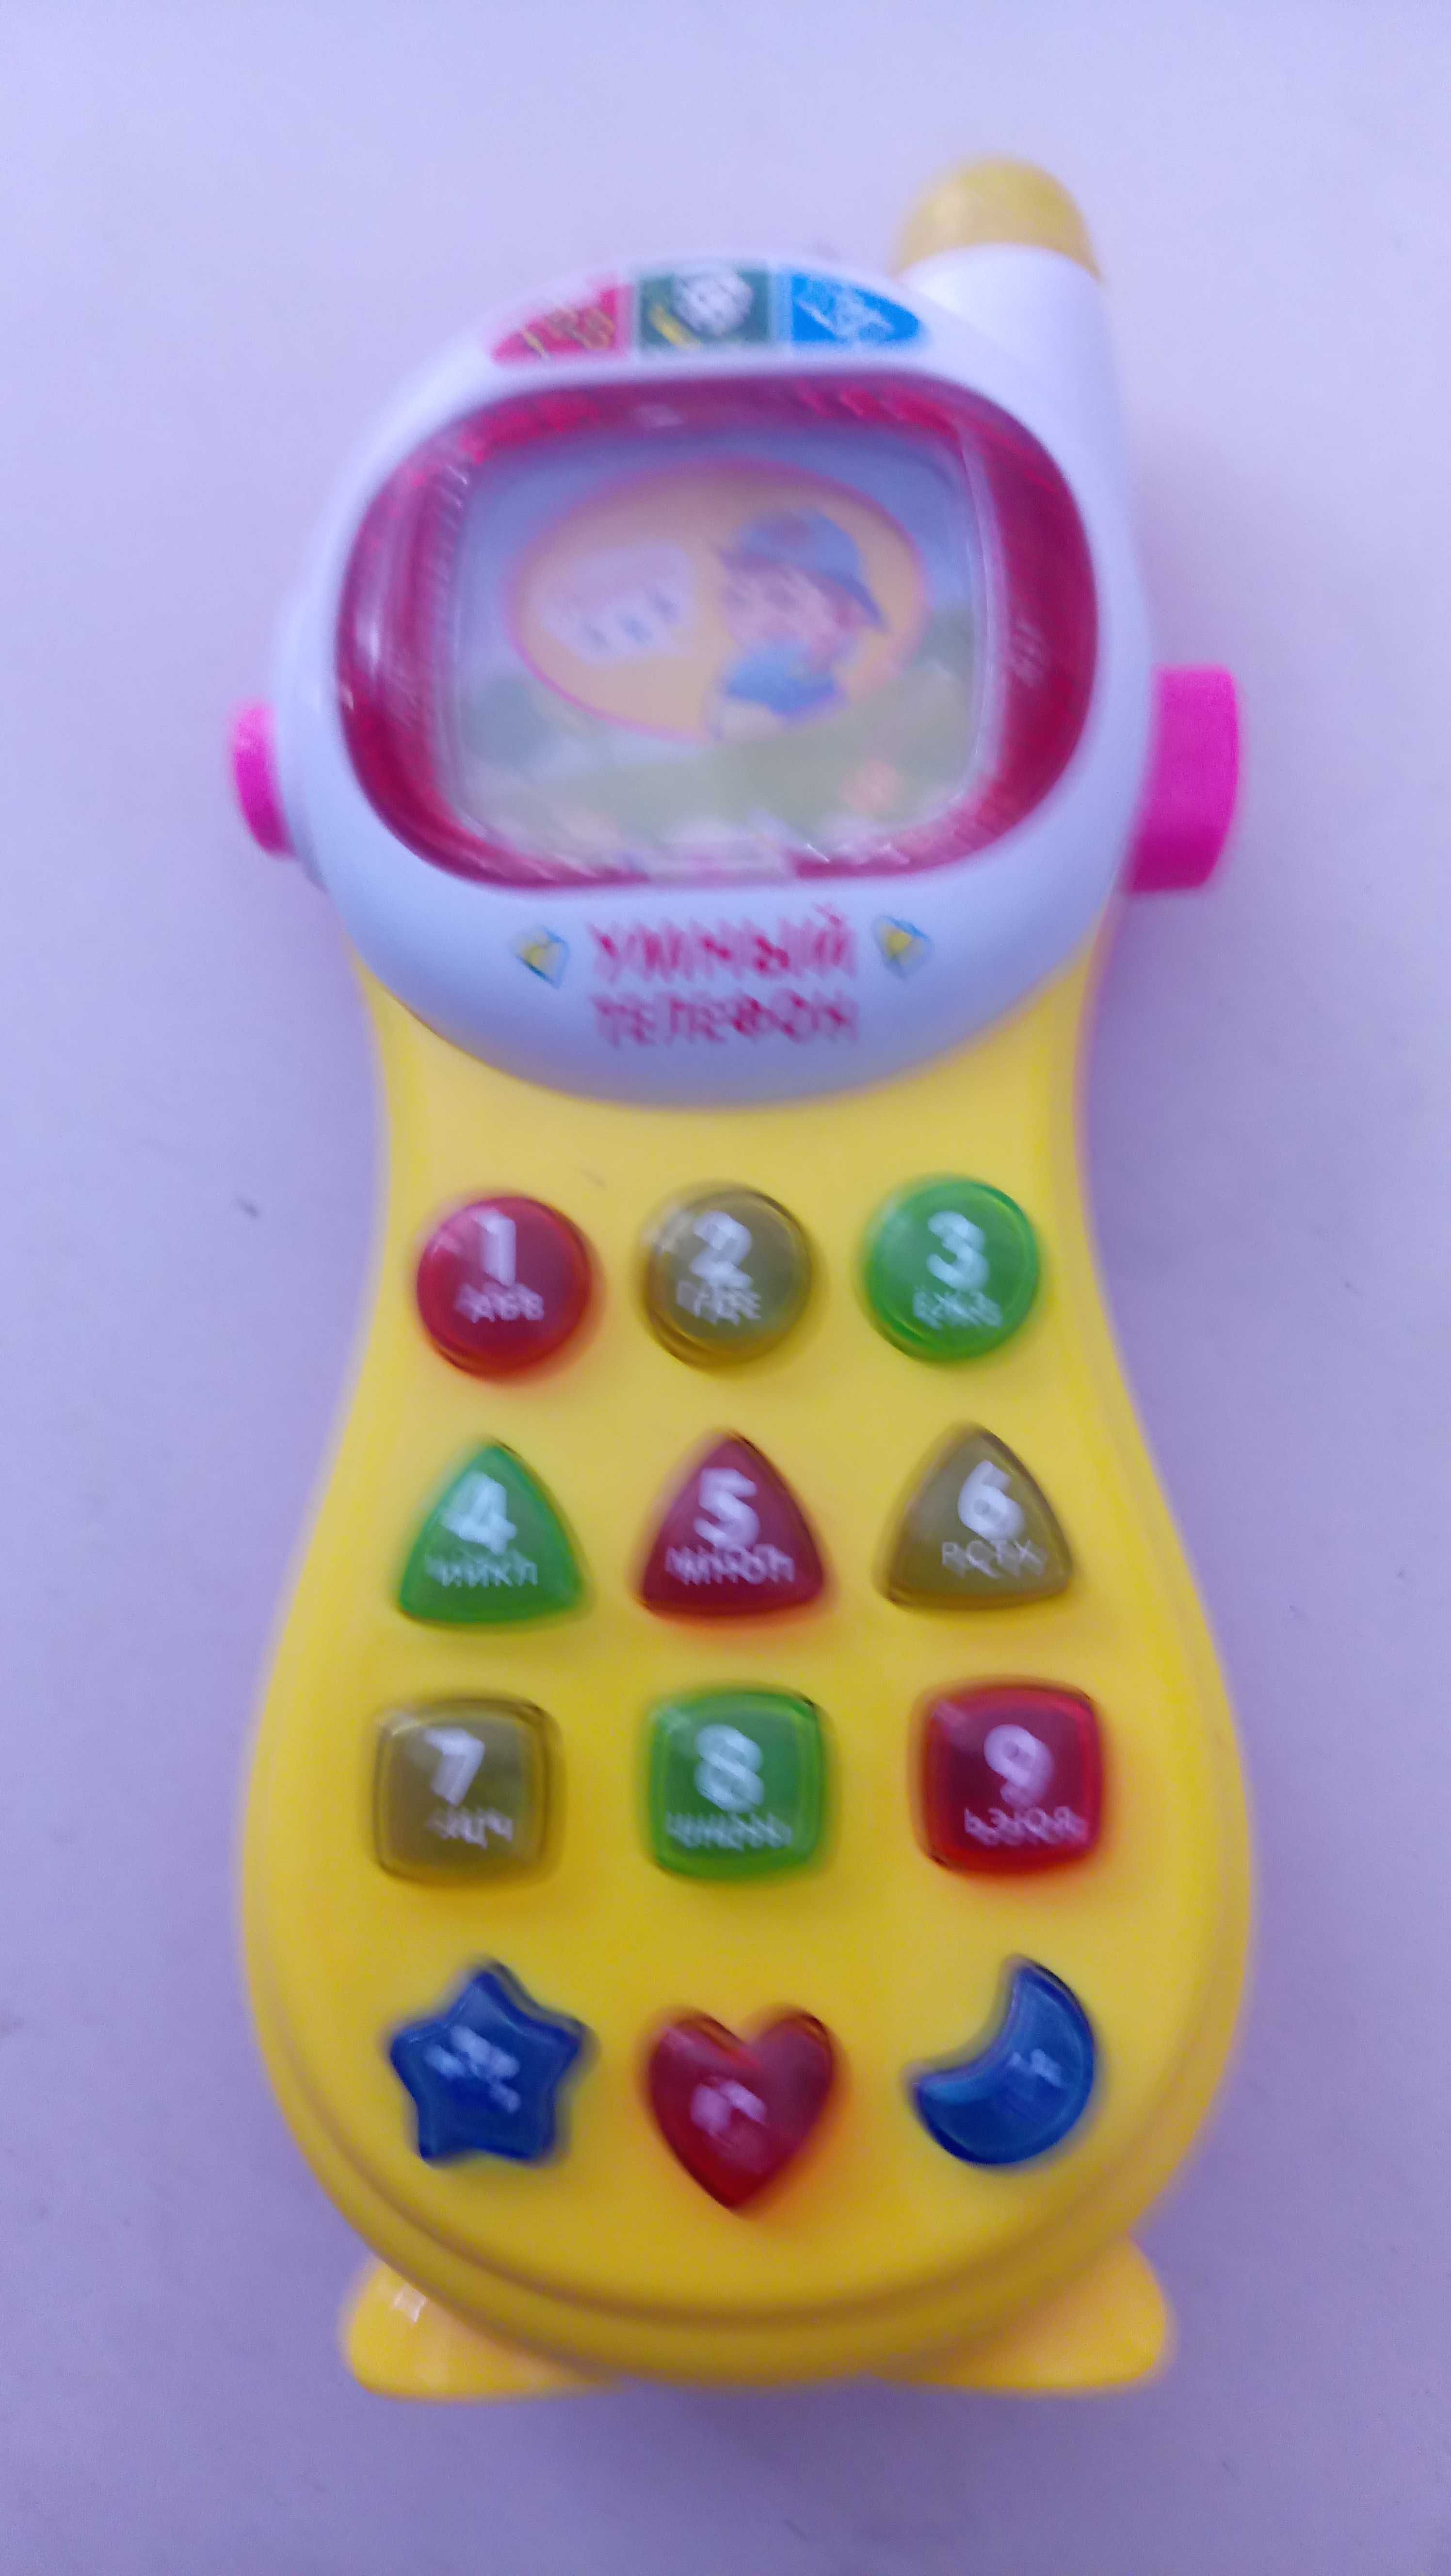 Куклы Детские телефон часы Машинки Хаги Ваги Пупит Фишки.